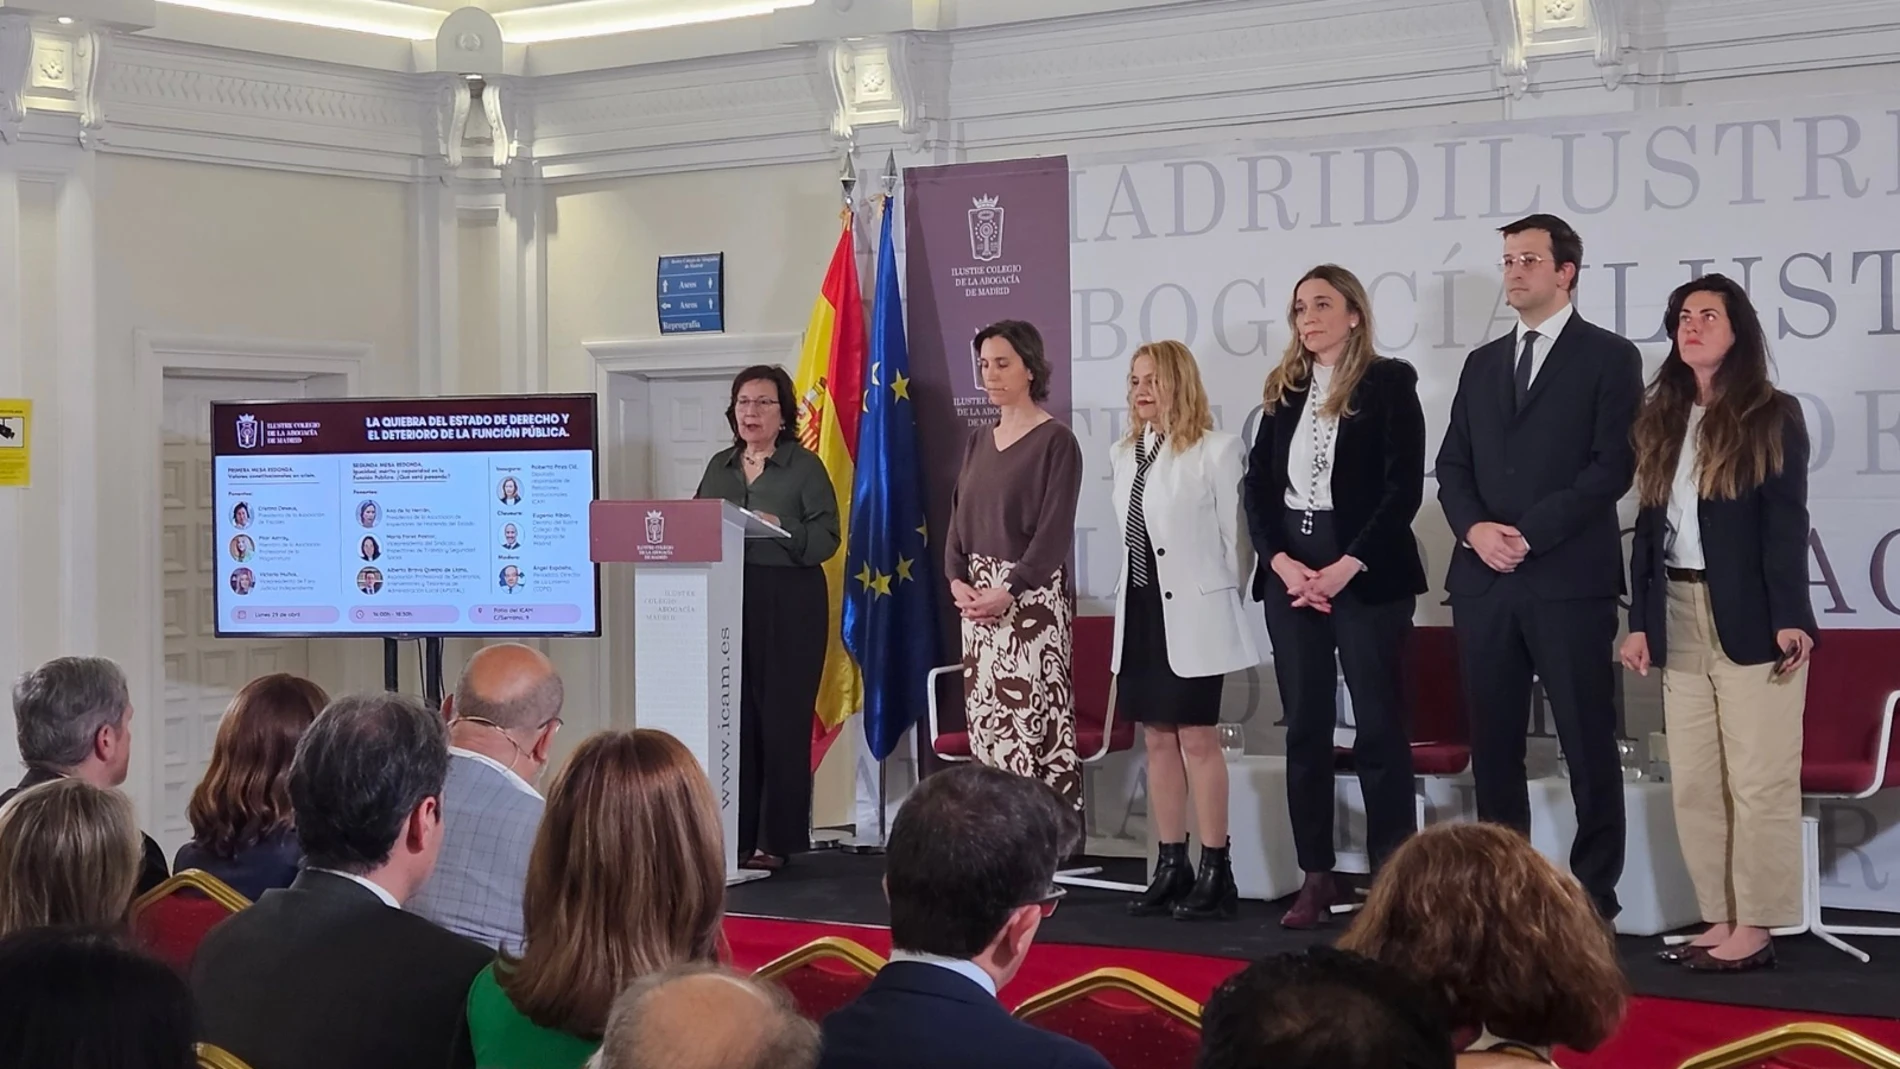 La presidenta de la Asociación de Fiscales, Cristina Dexeus, interviene en el acto, acompañado de otros juristas y funcionarios